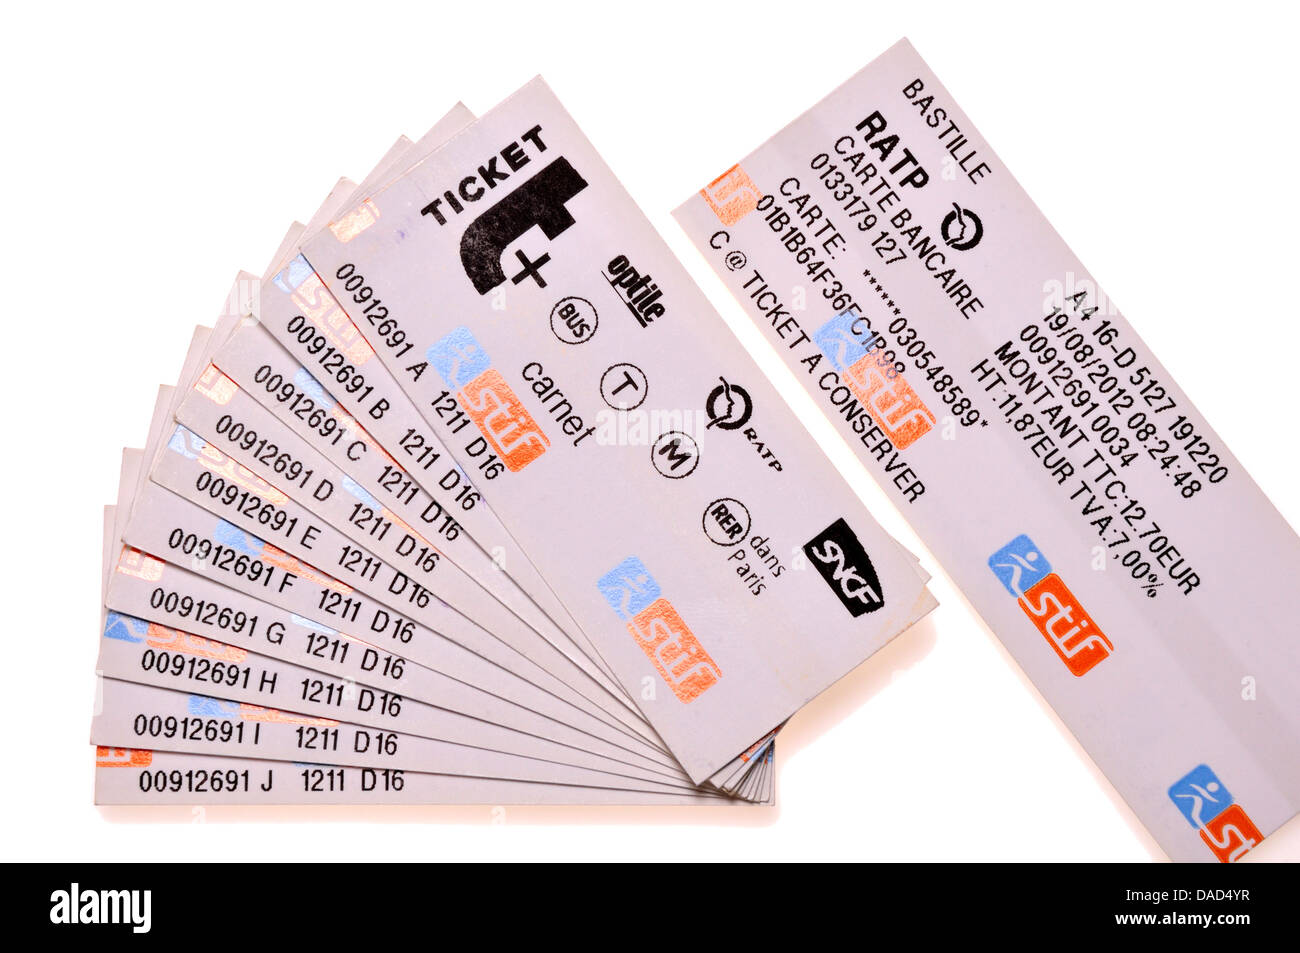 Parigi biglietti della metropolitana. Un "carnet di' - 10 biglietti acquistati insieme a un prezzo scontato Foto Stock